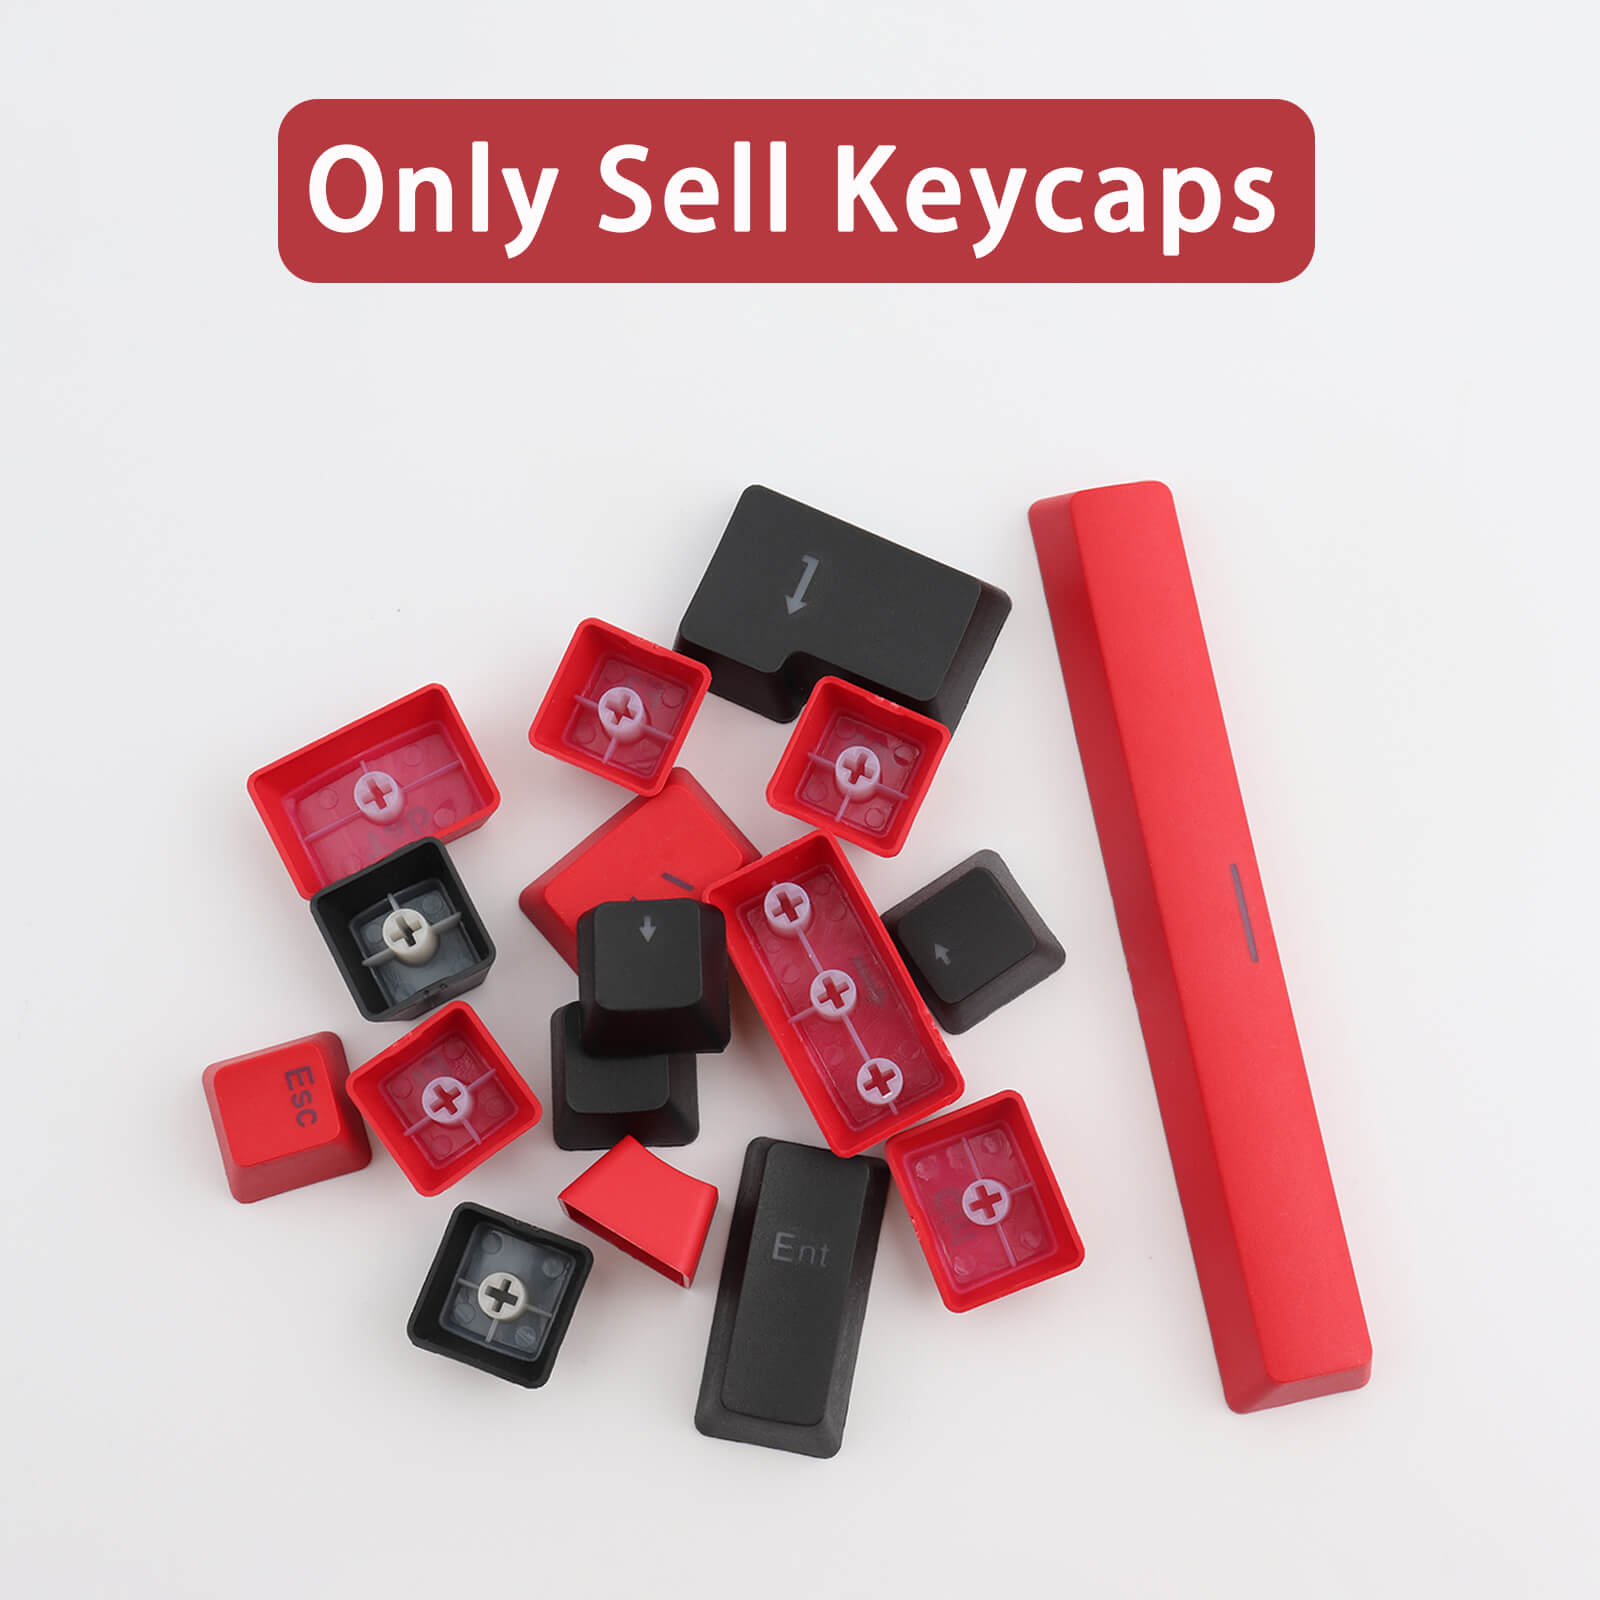 Keycaps